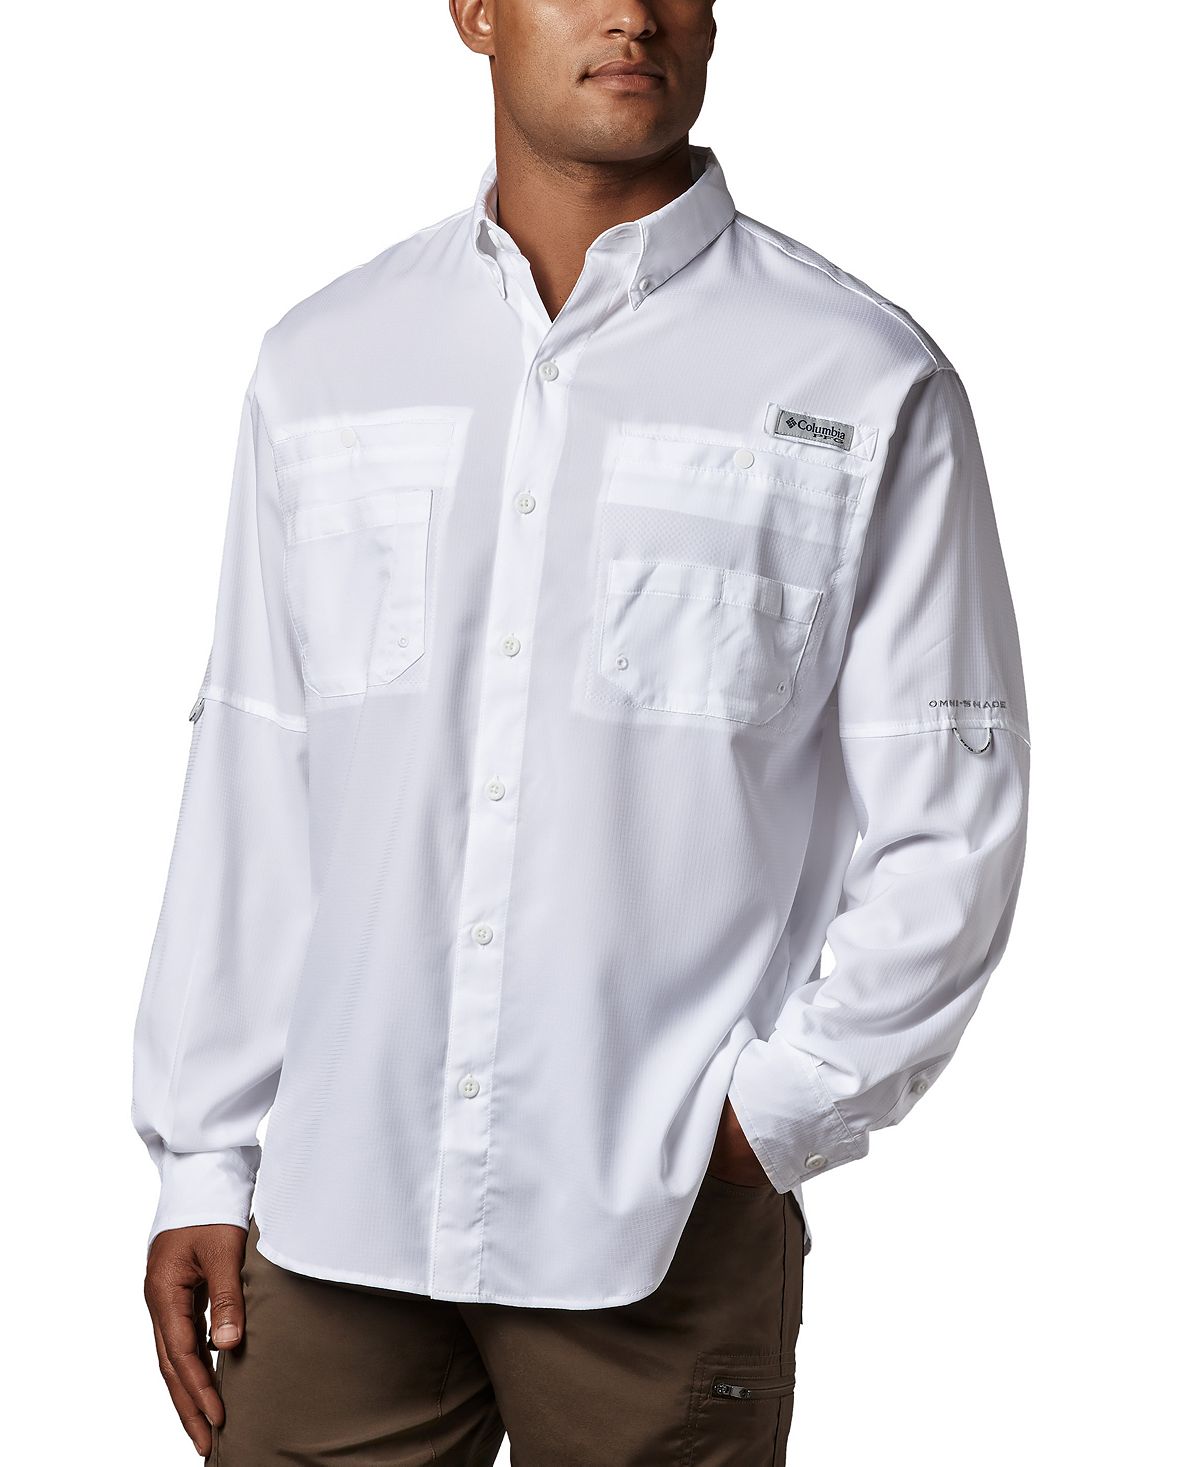 Мужская рубашка с длинным рукавом pfg tamiami ii Columbia, белый